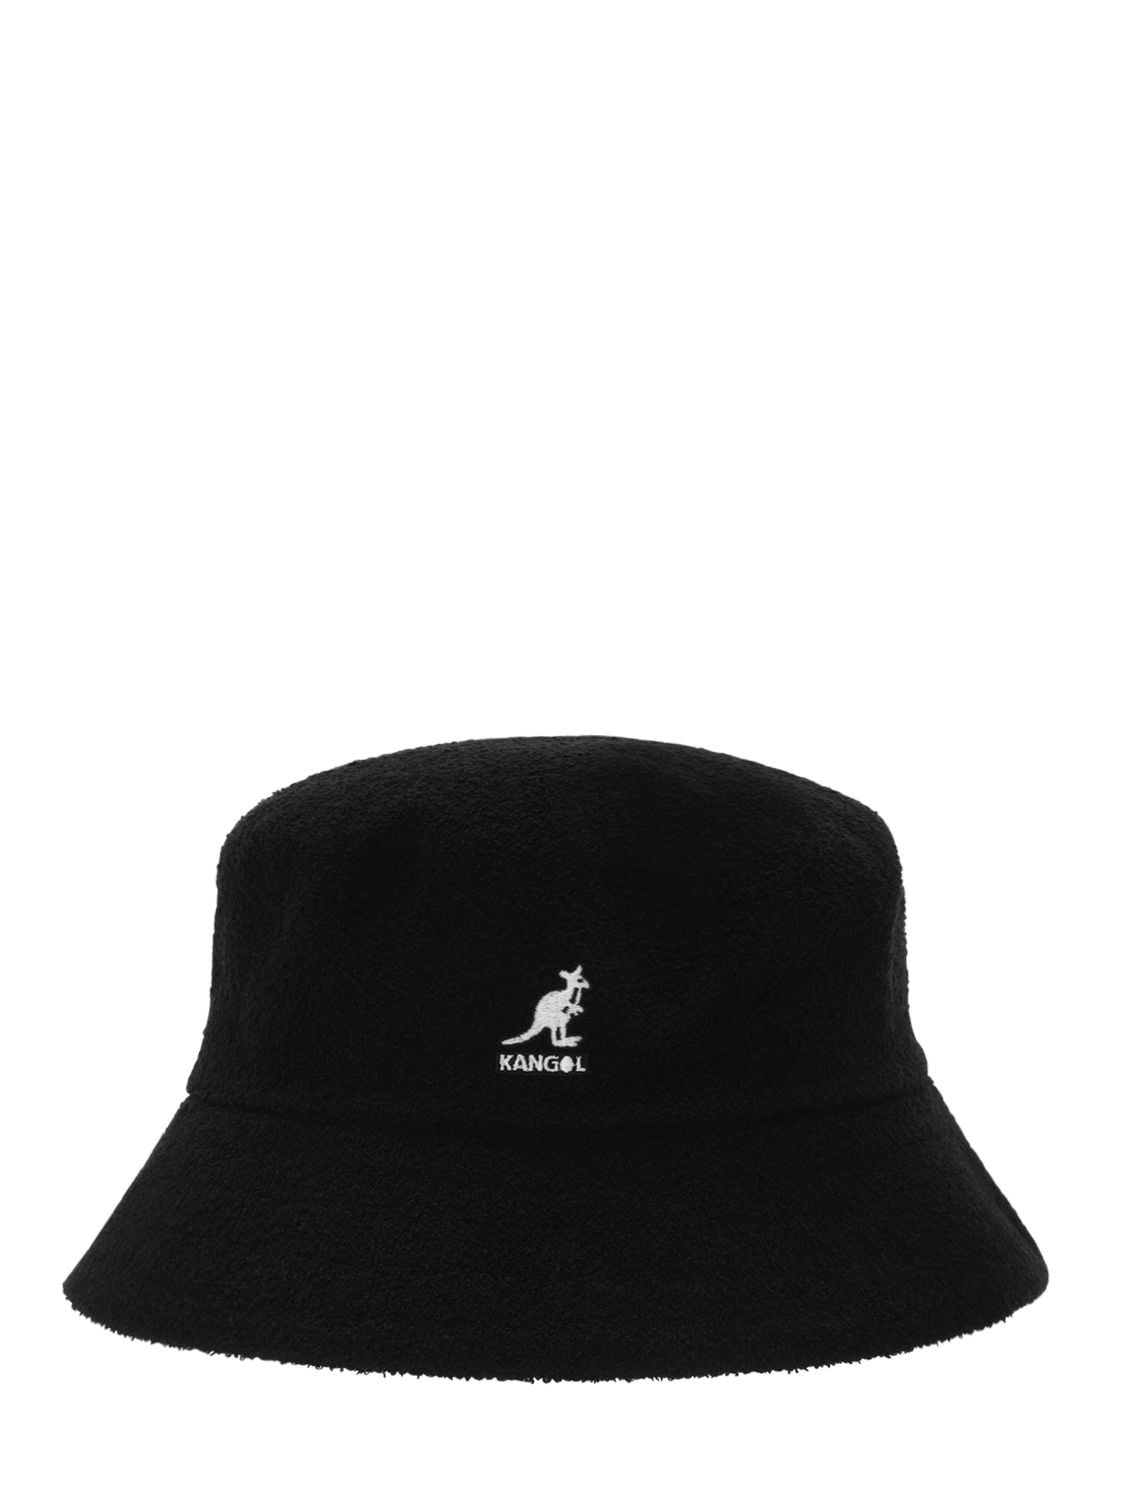 【特別送料無料！】 with hat Bermuda Kangol カンゴール large メンズ black in logo 帽子